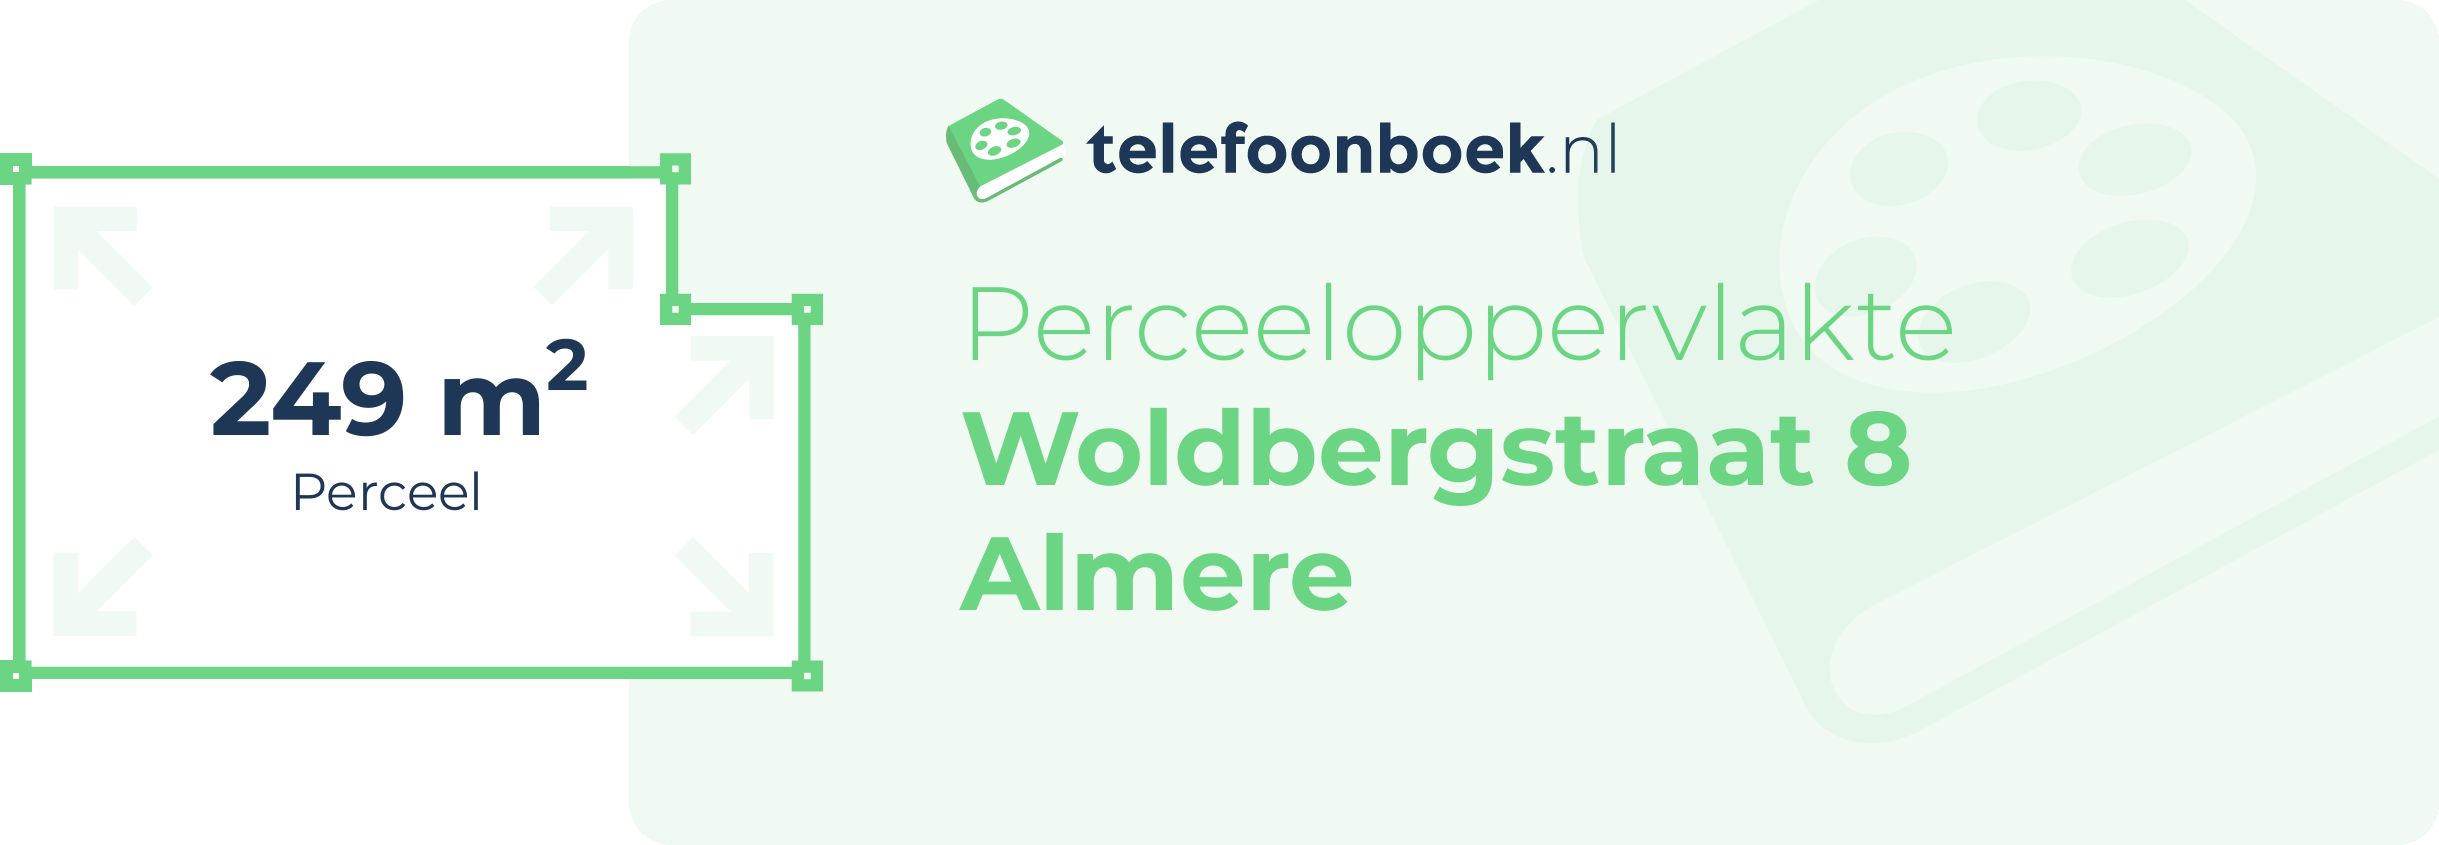 Perceeloppervlakte Woldbergstraat 8 Almere